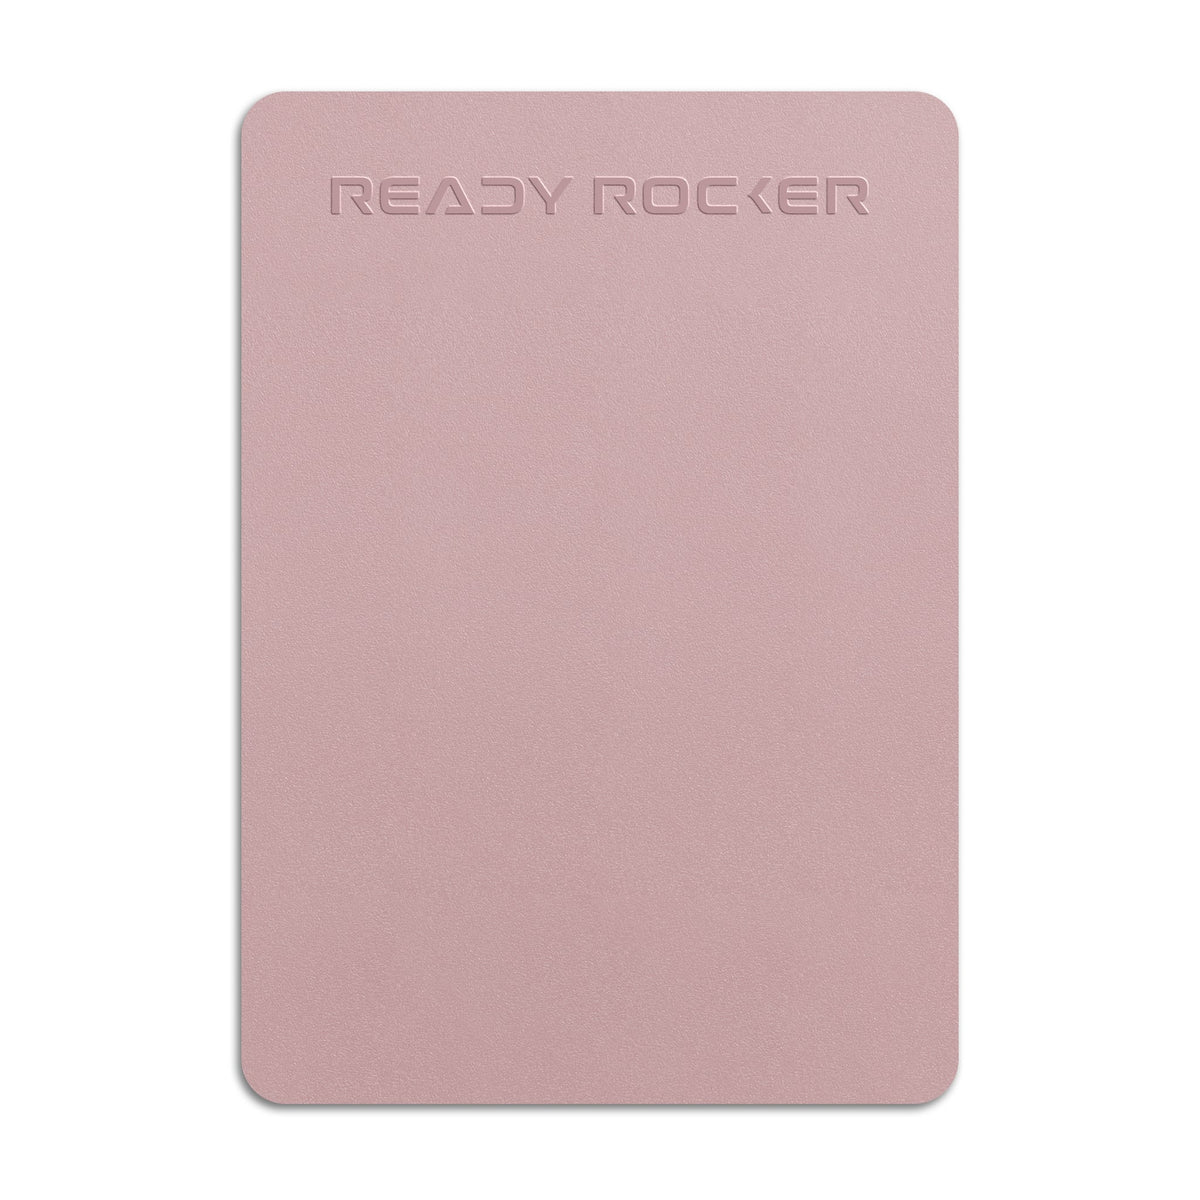 Ready Rocker Portable Rocker